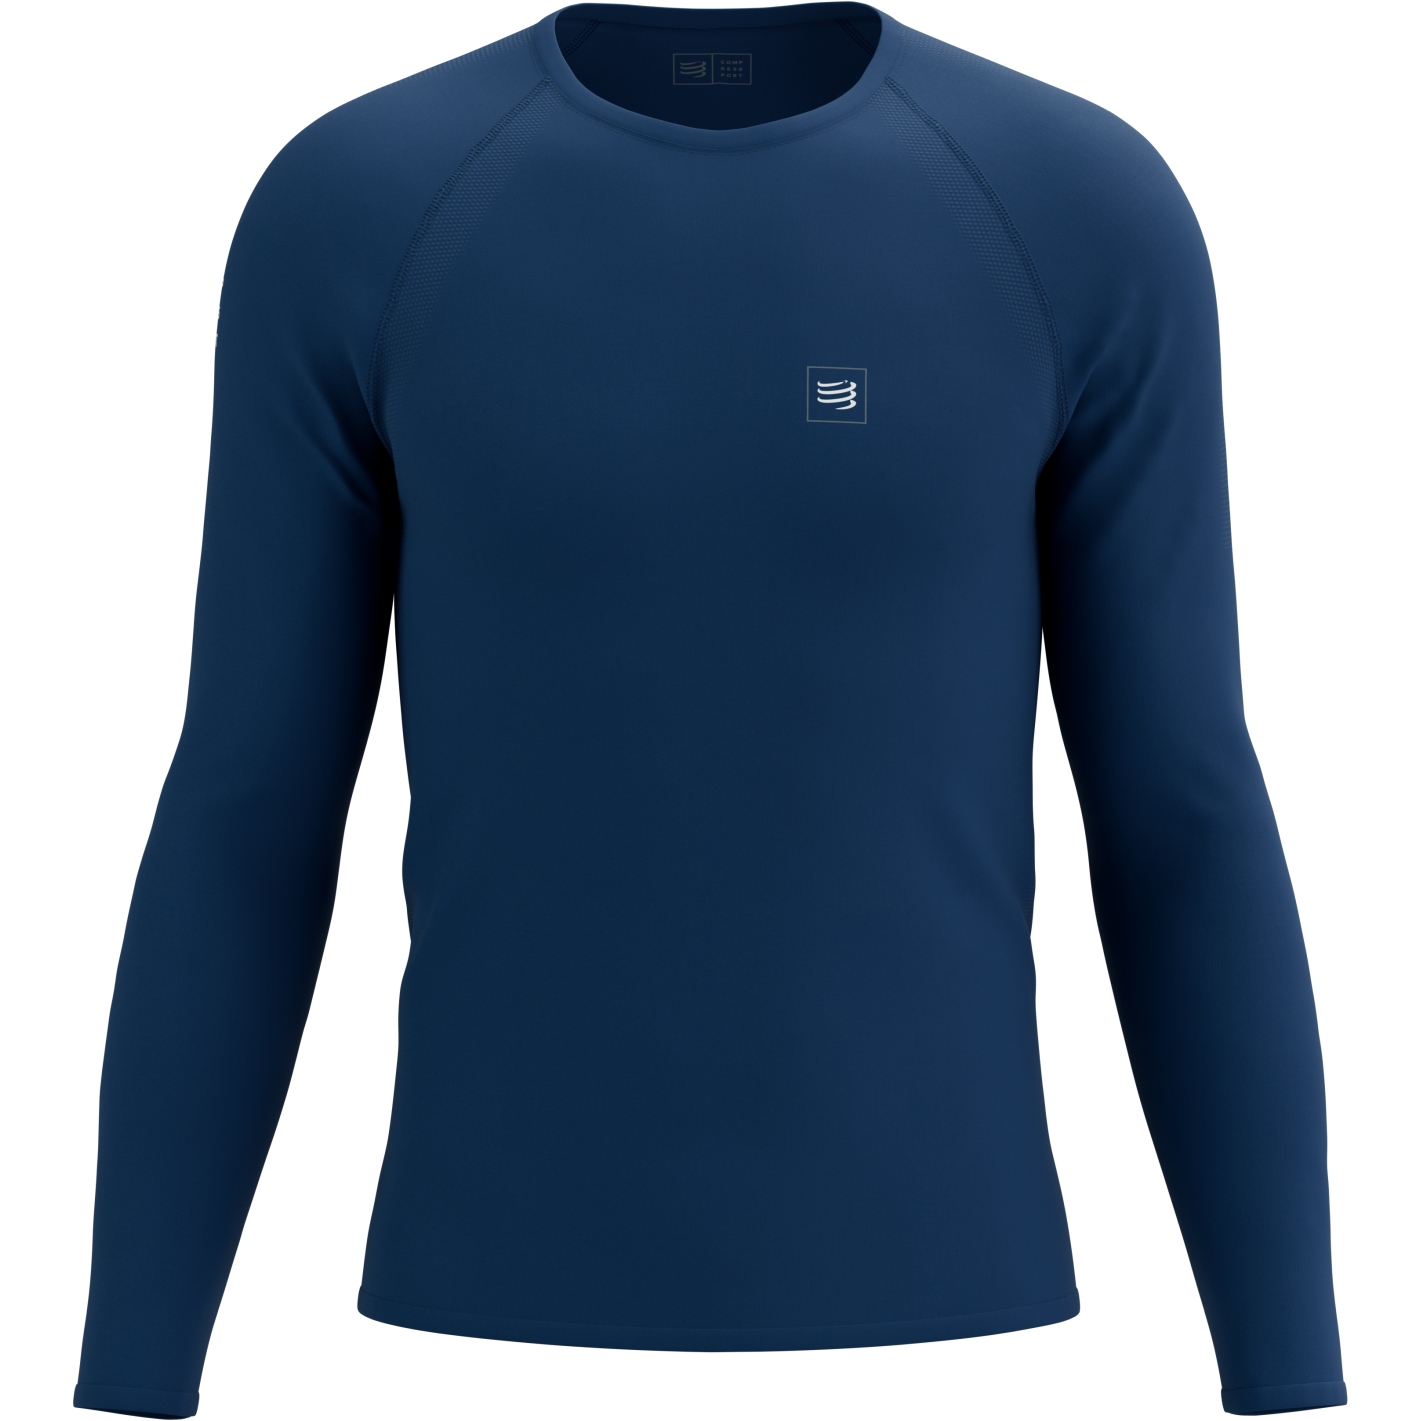 Produktbild von Compressport Training Langarmshirt - estate blue